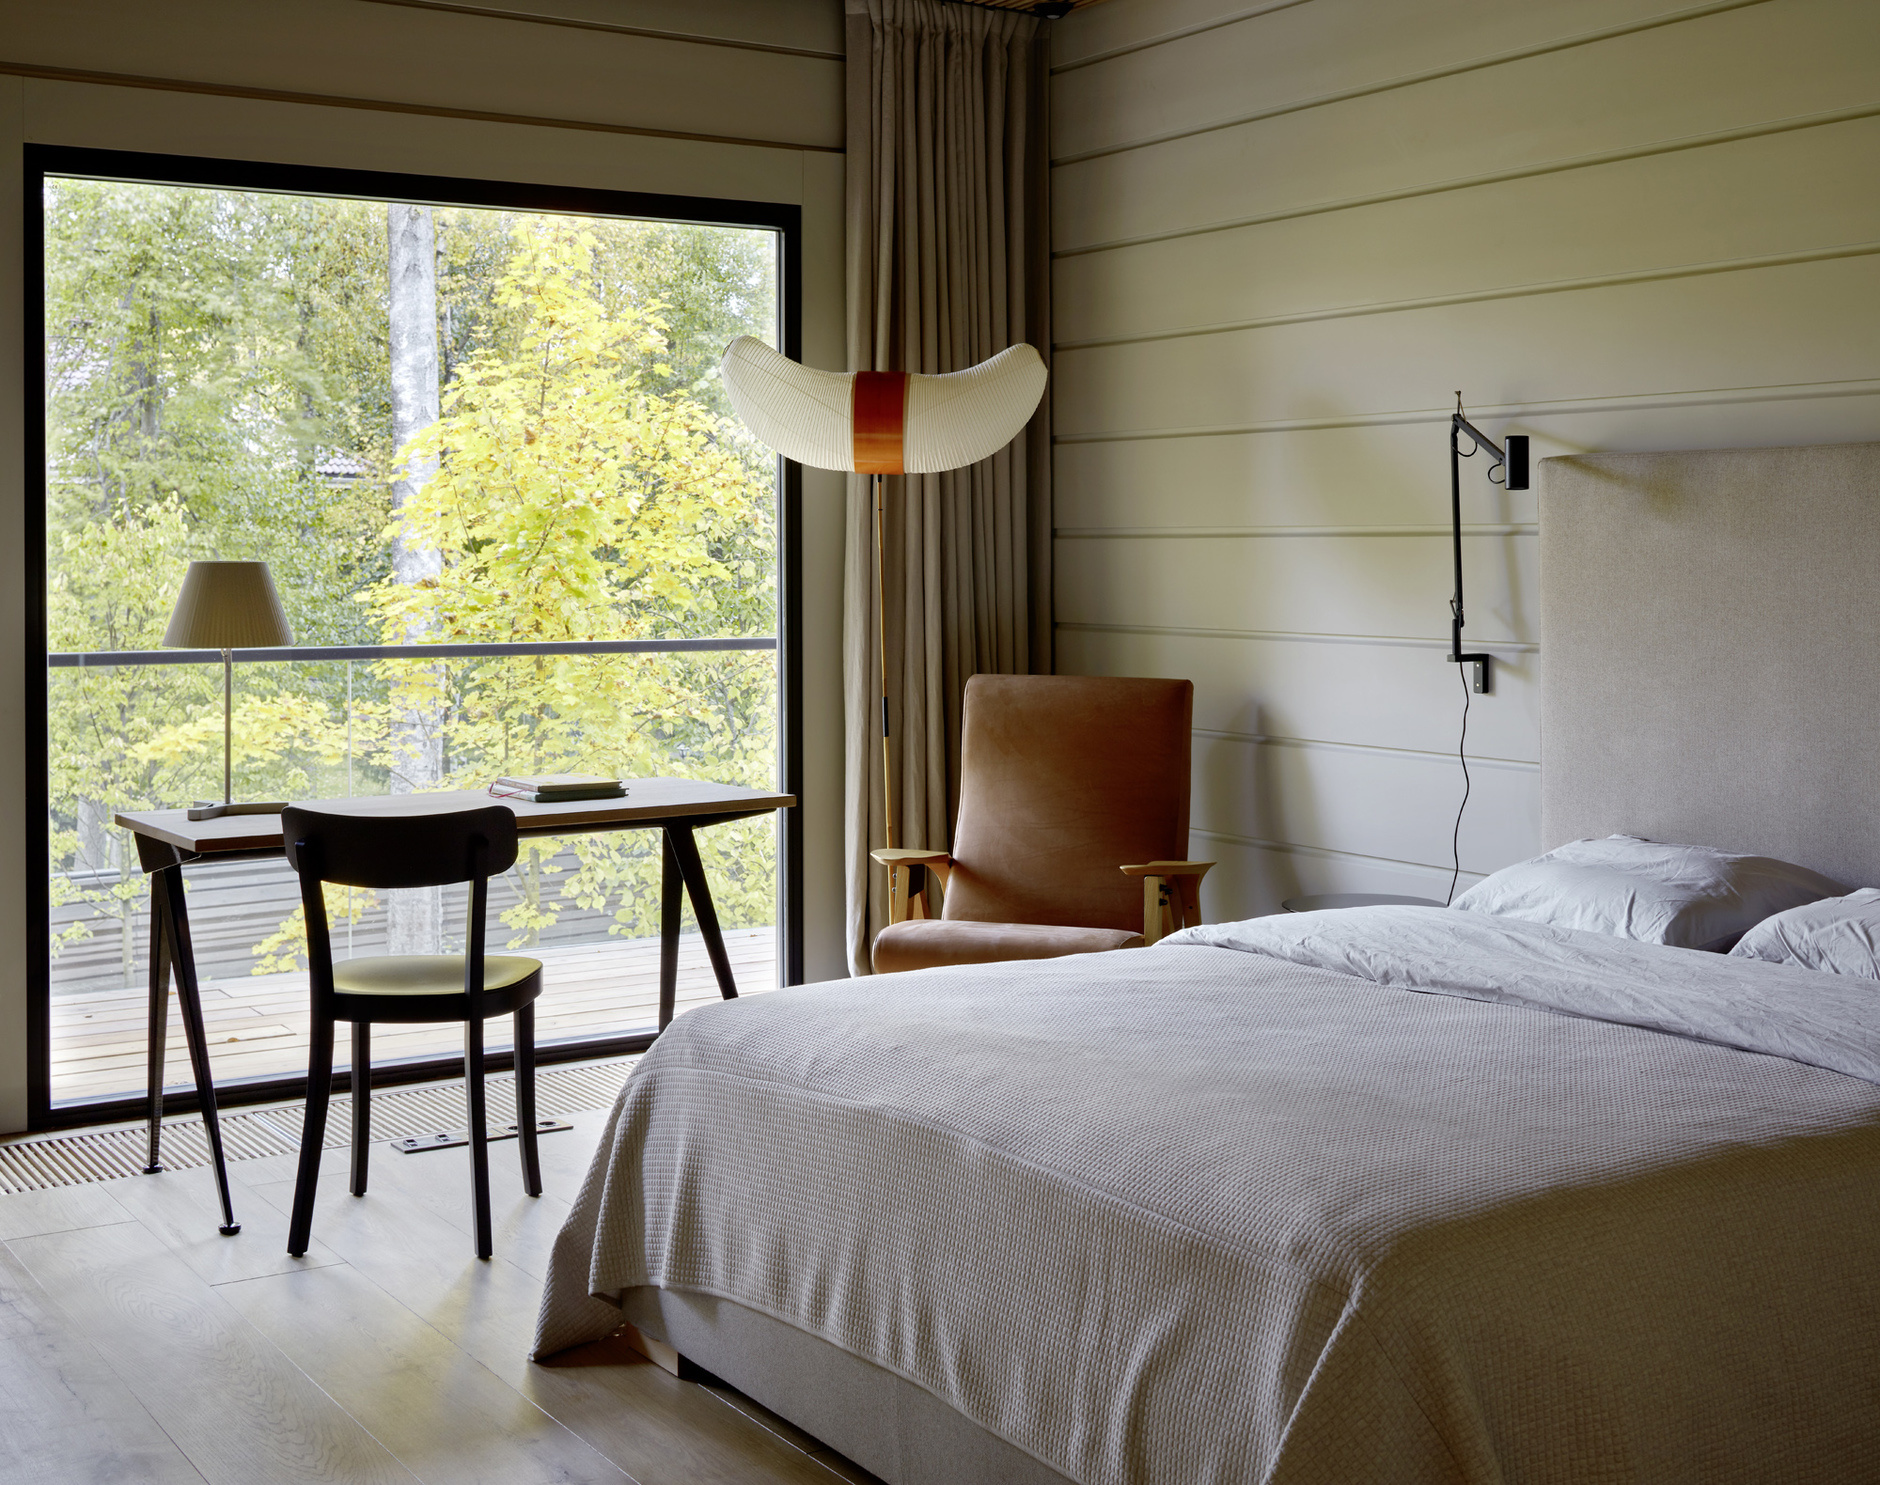 Phòng ngủ bổ sung góc làm việc bên cạnh ô cửa sổ đầy nắng ấm, nhìn ra những tán cây xanh mướt. Trong trường hợp này, màu be là lựa chọn hoàn hảo để tạo cảm hứng cho cả hai không gian.